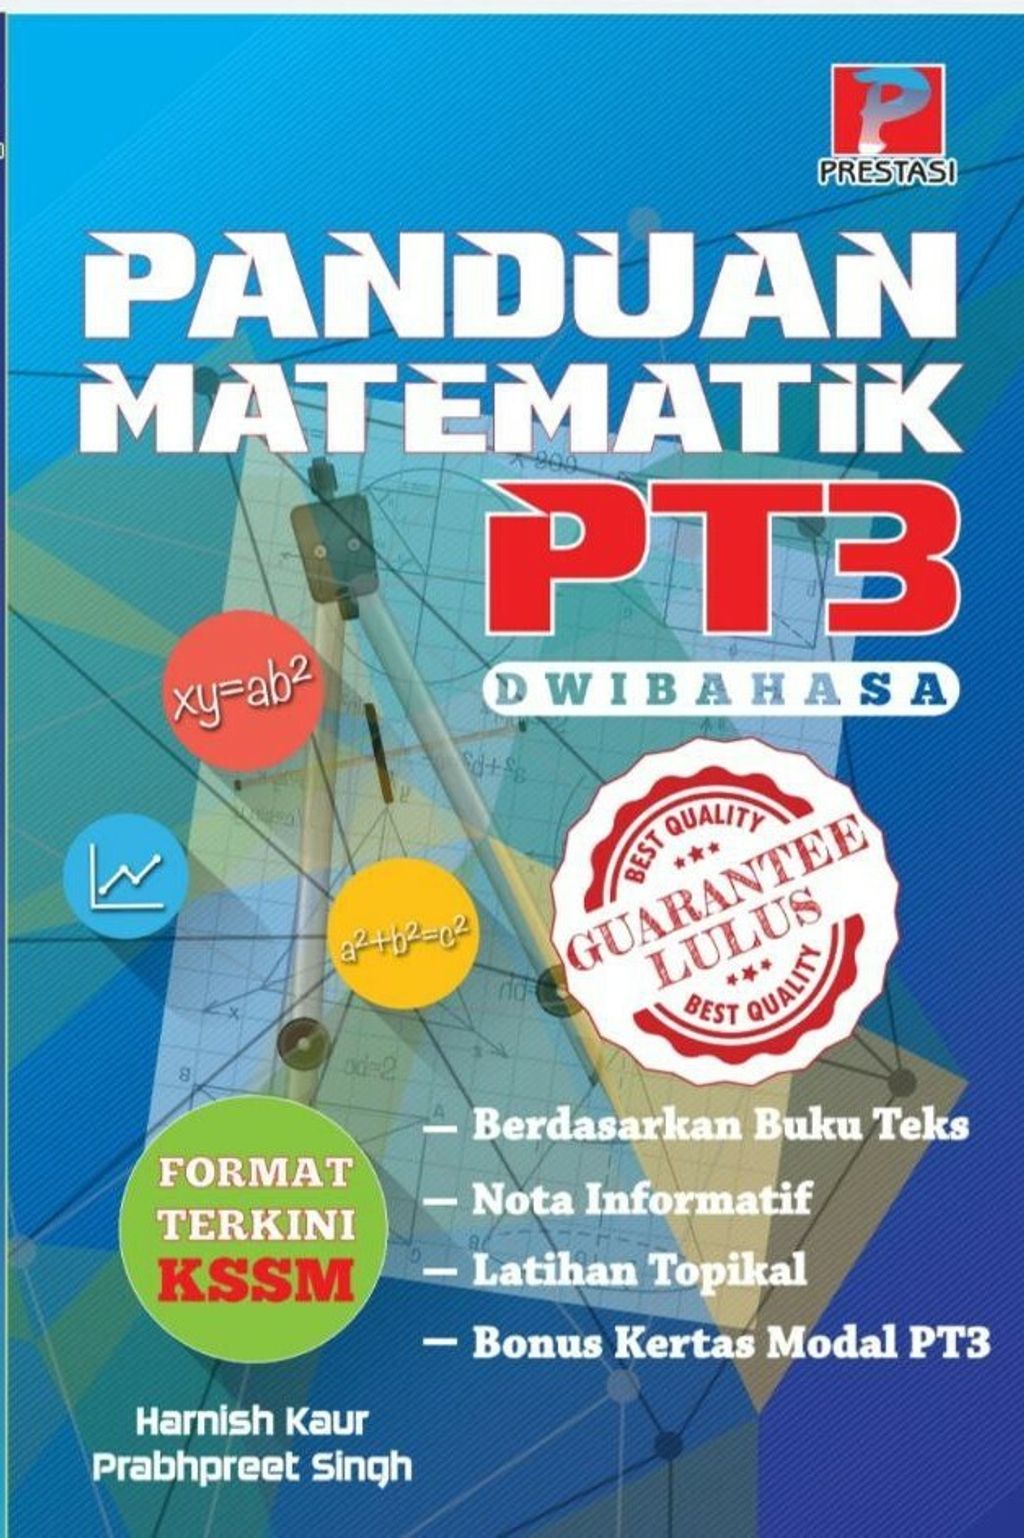 Panduan Matematik Pt3 front cover.jpg